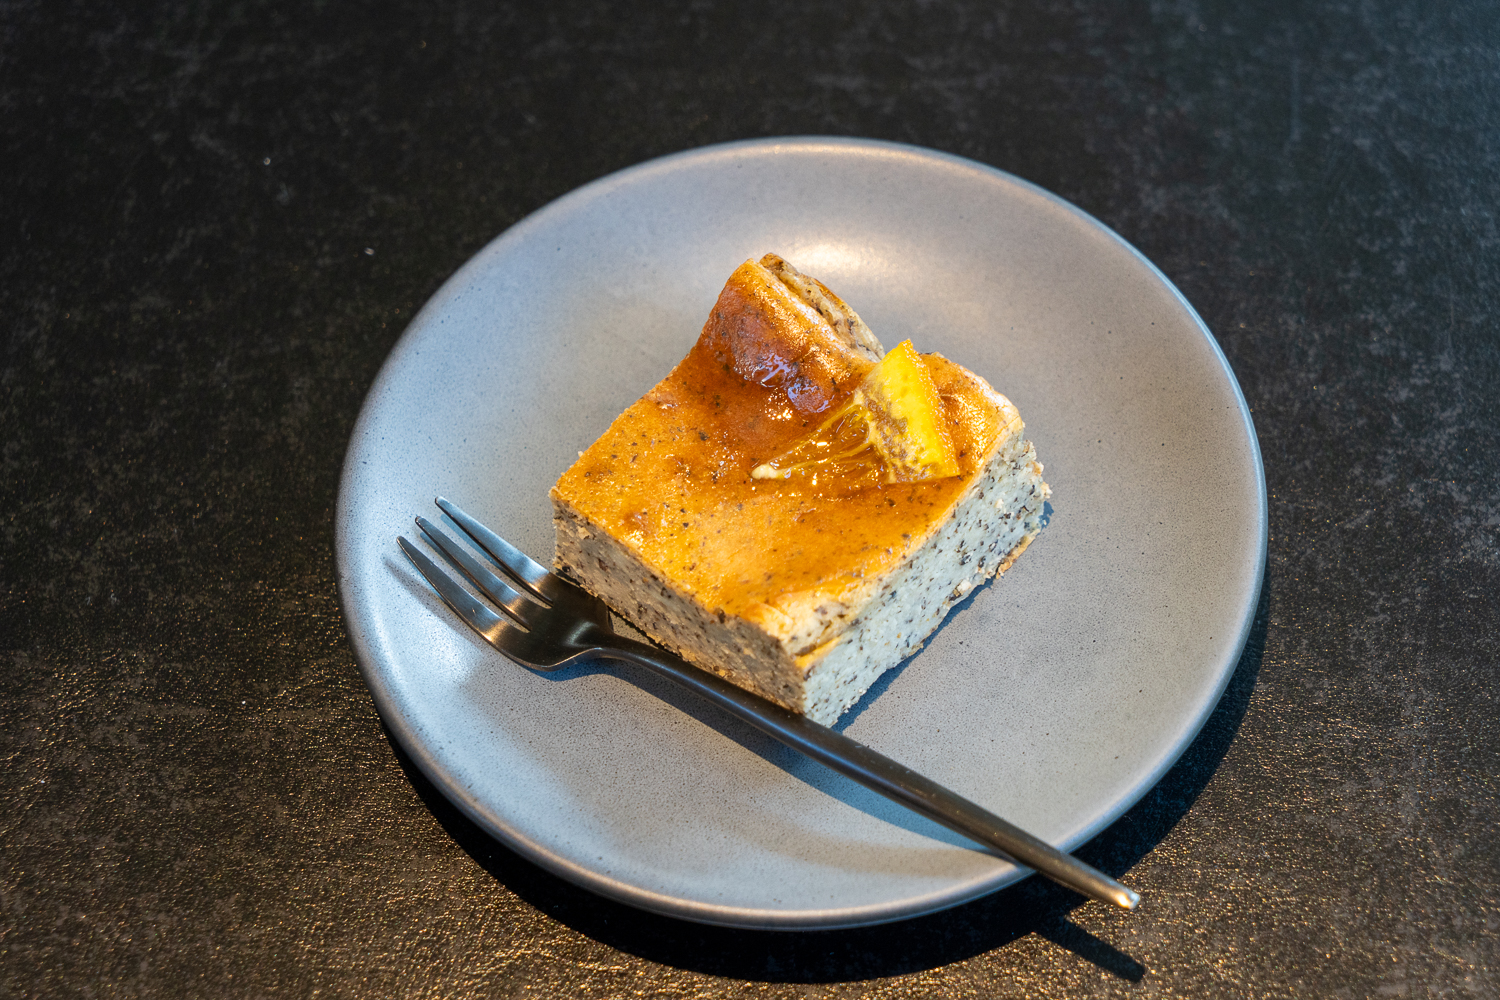 爽やかな味わいのアールグレーチーズケーキ550円。